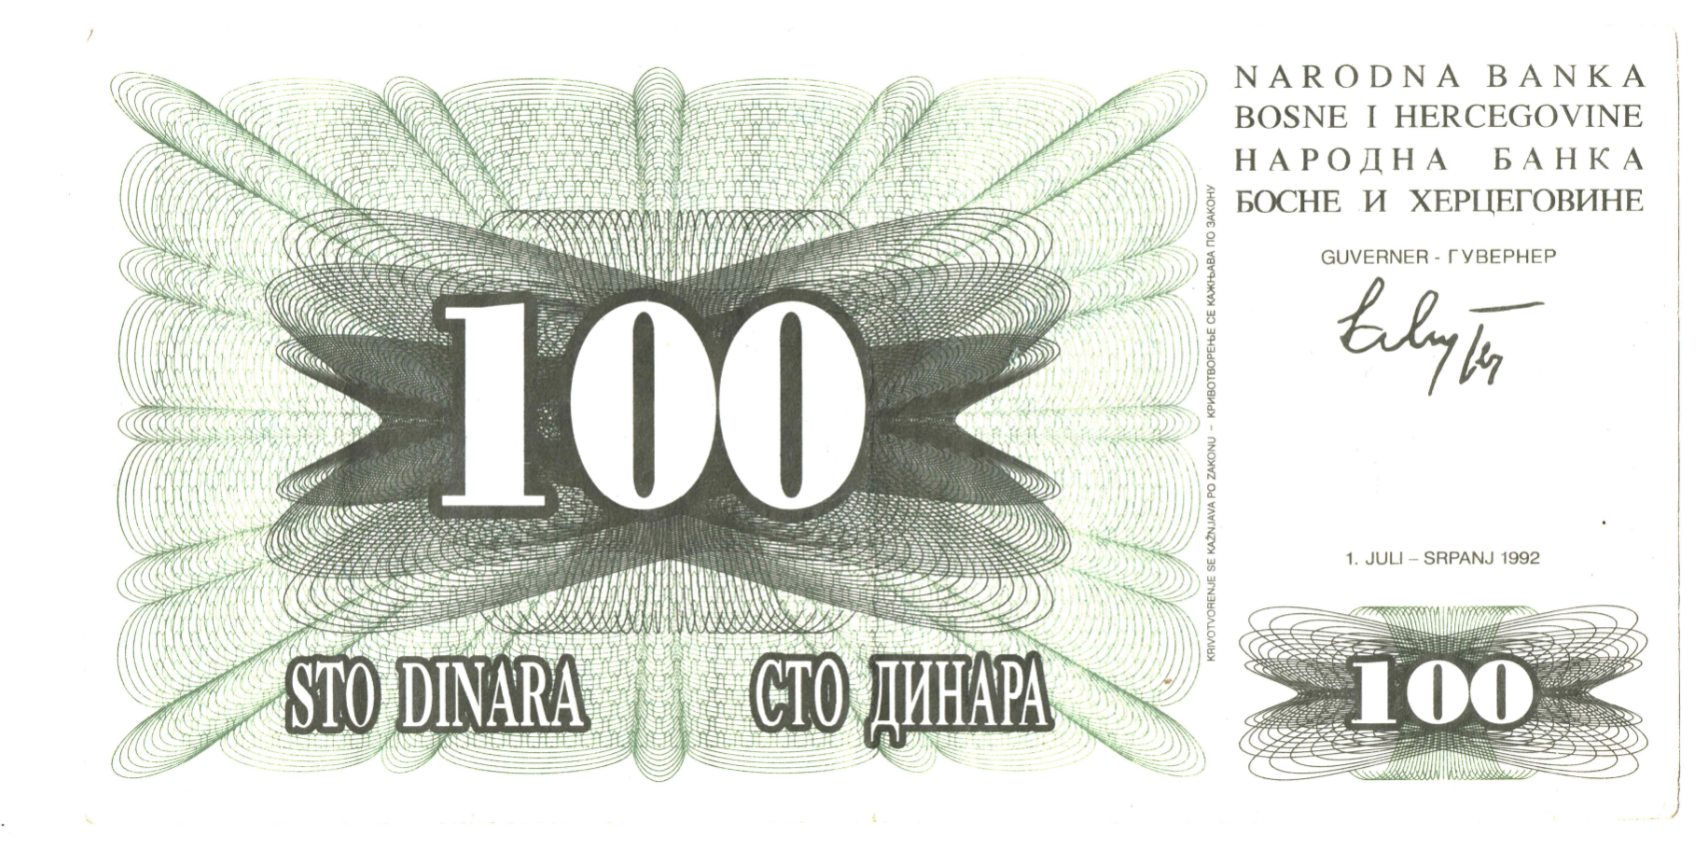 Bosnia and Herzegovina 100 Dinara Face_000141.png